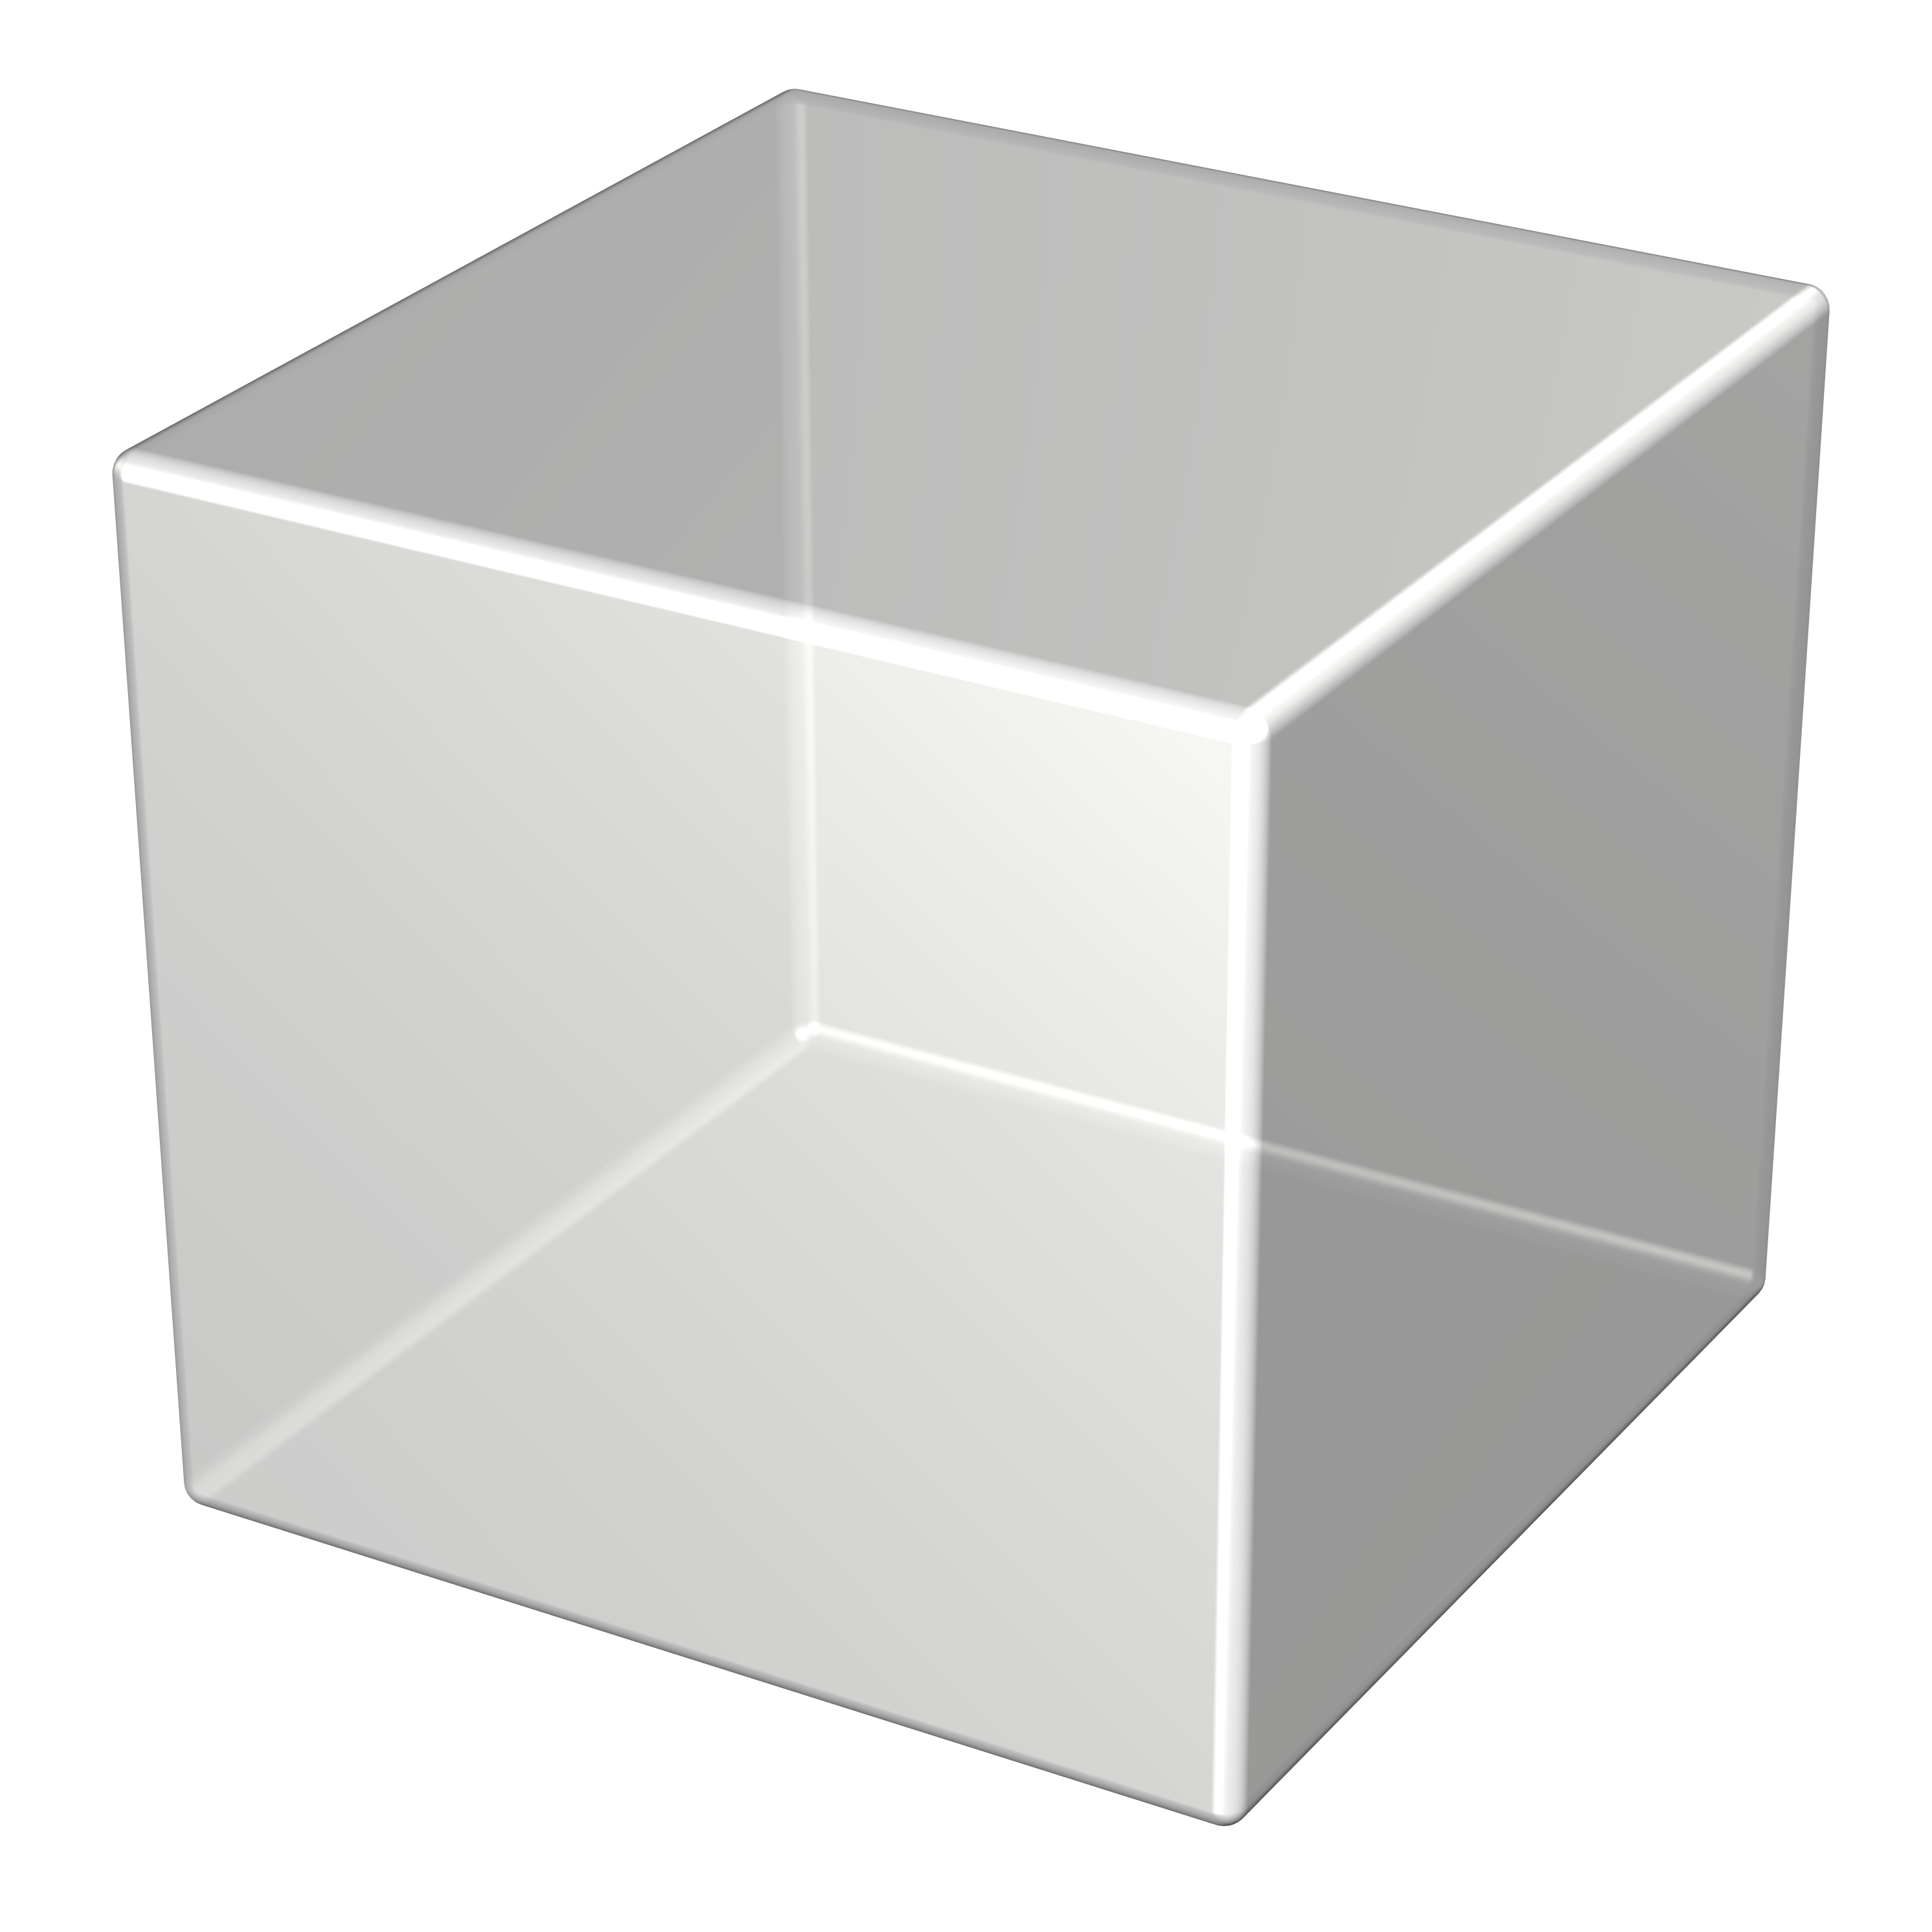 Куб. Объемная фигура куб. Объемный квадрат. Трёхмерный куб.